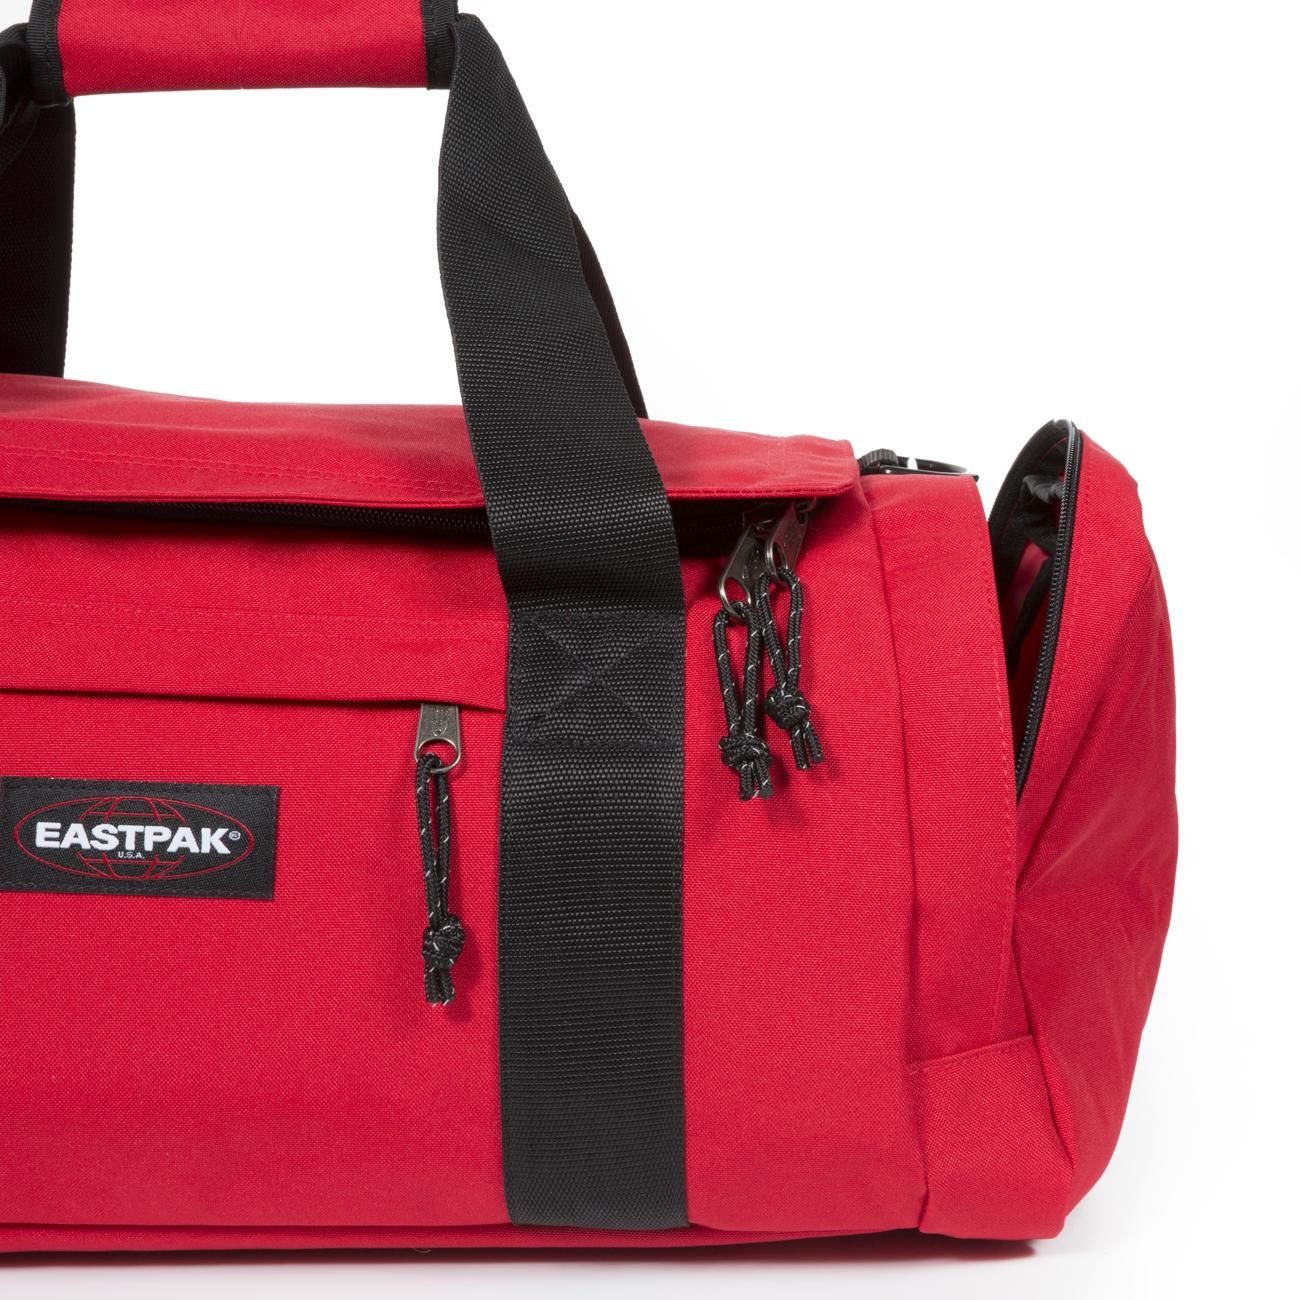 EASTPAK READER S BORSONE EASTPAK RED | Sportswear